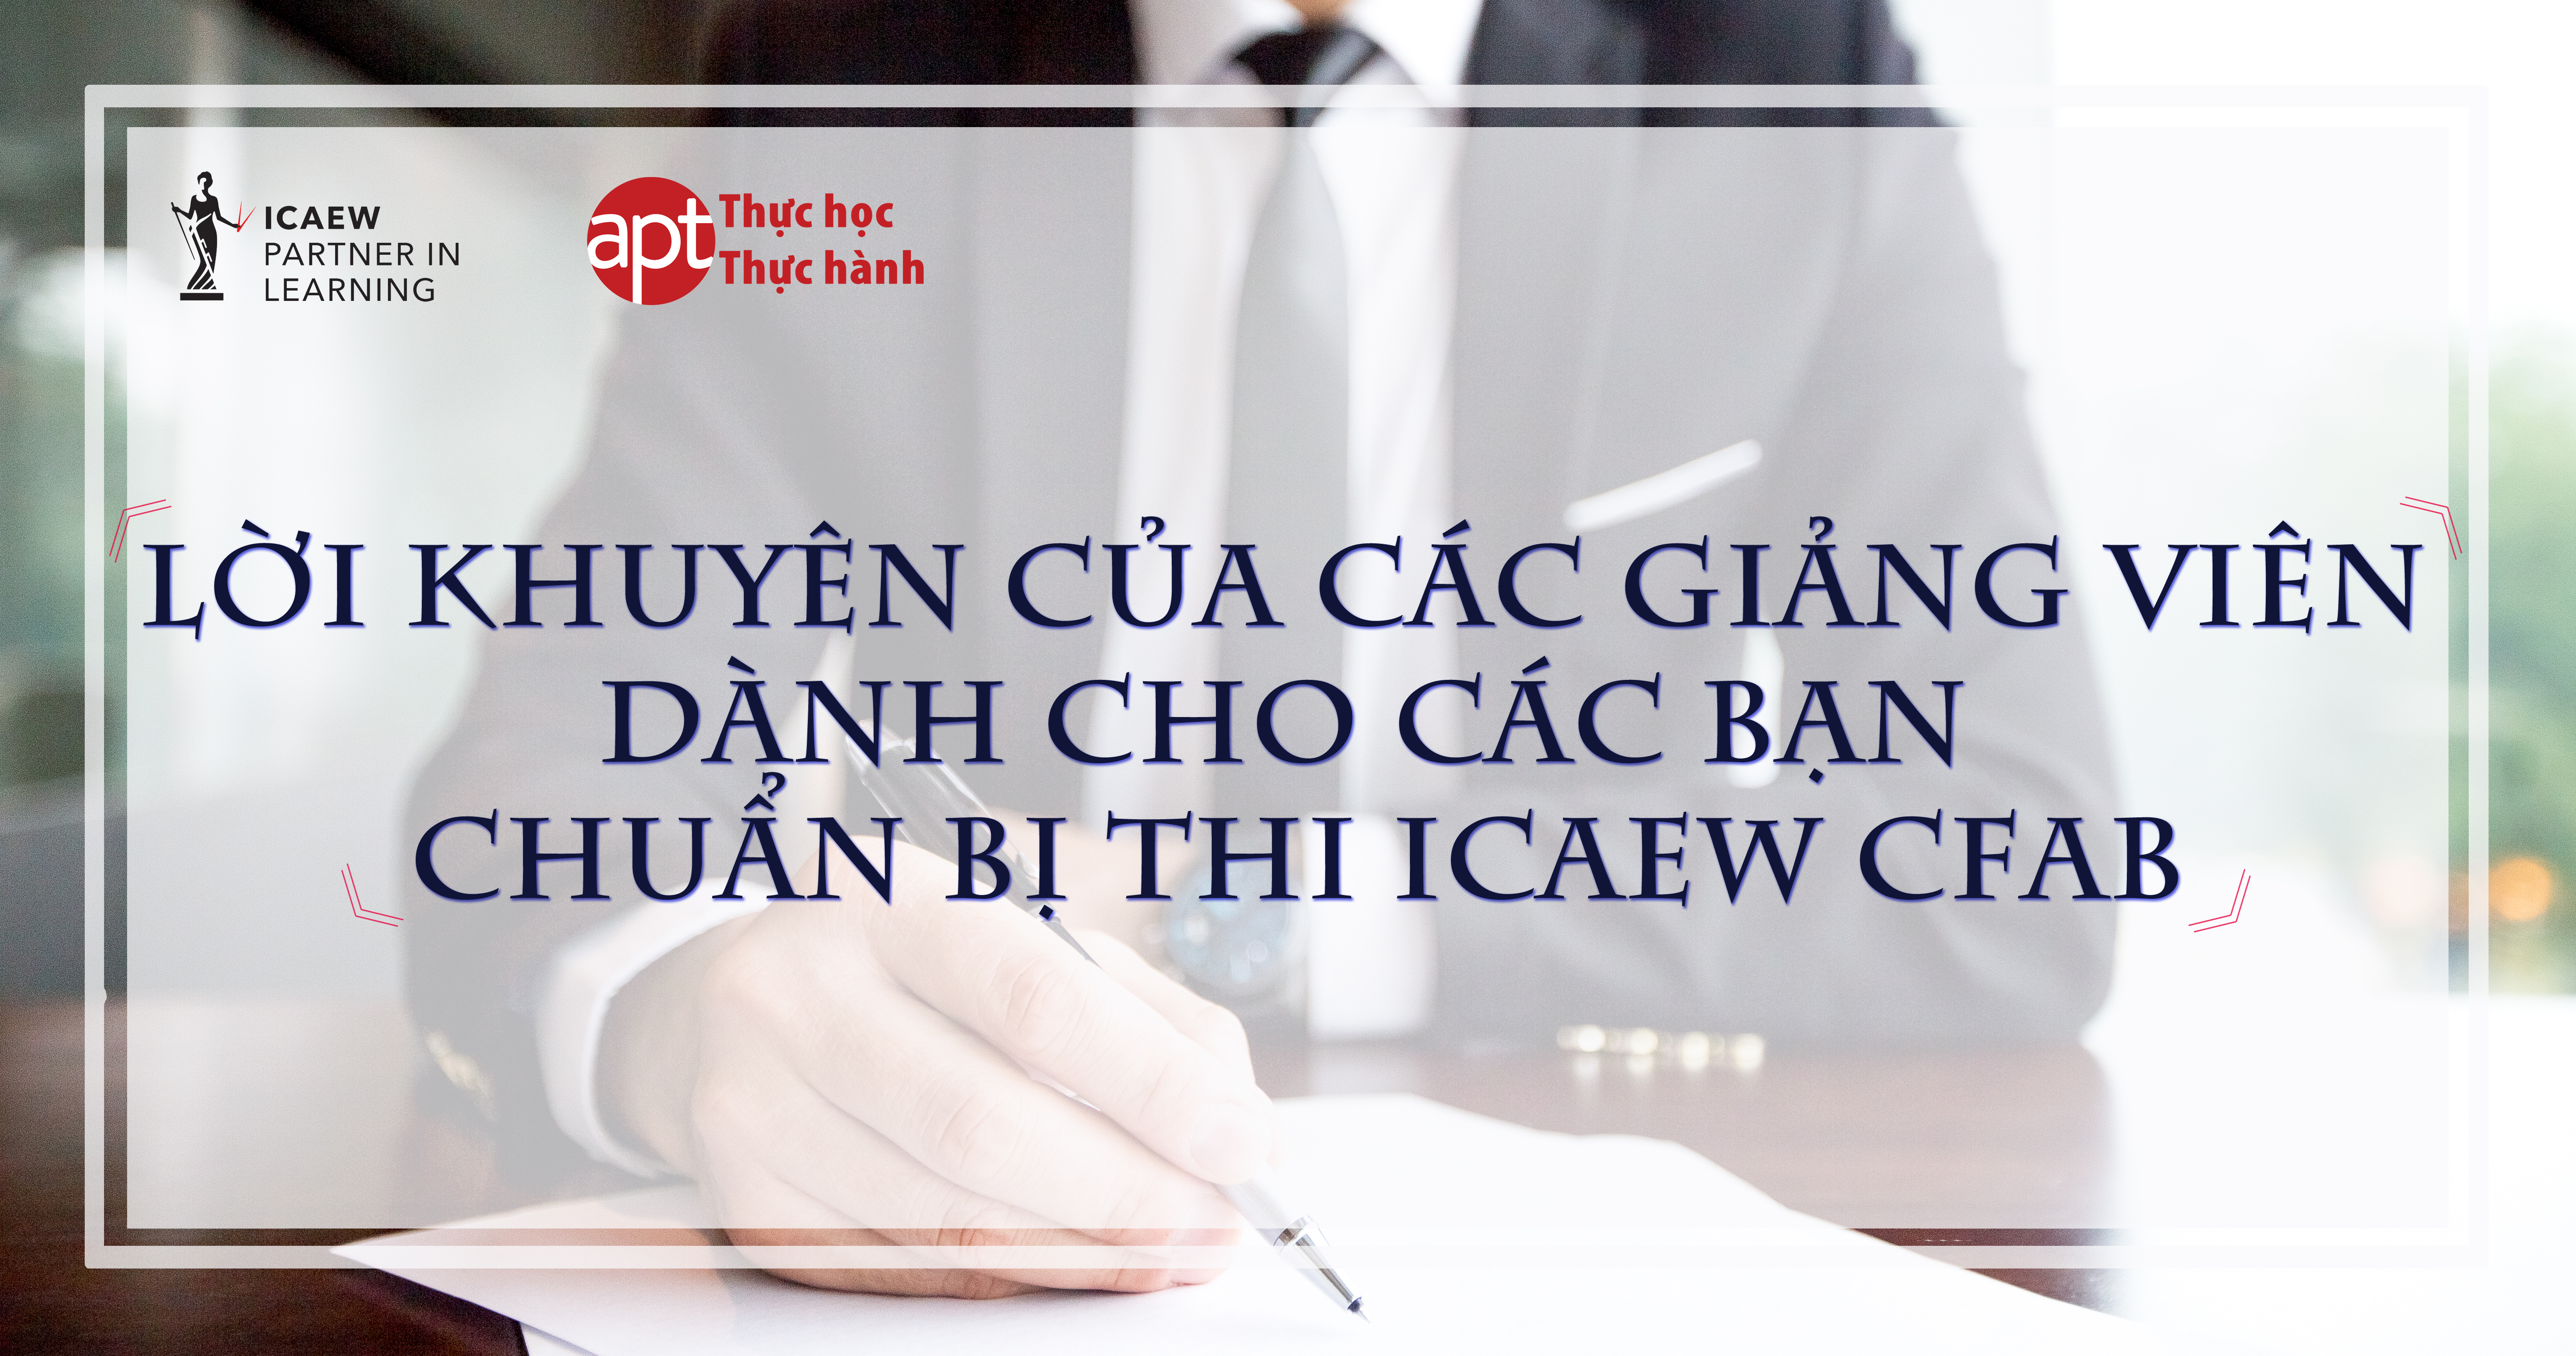 Lời khuyên của các giảng viên với các bạn chuẩn bị thi ICAEW CFAB